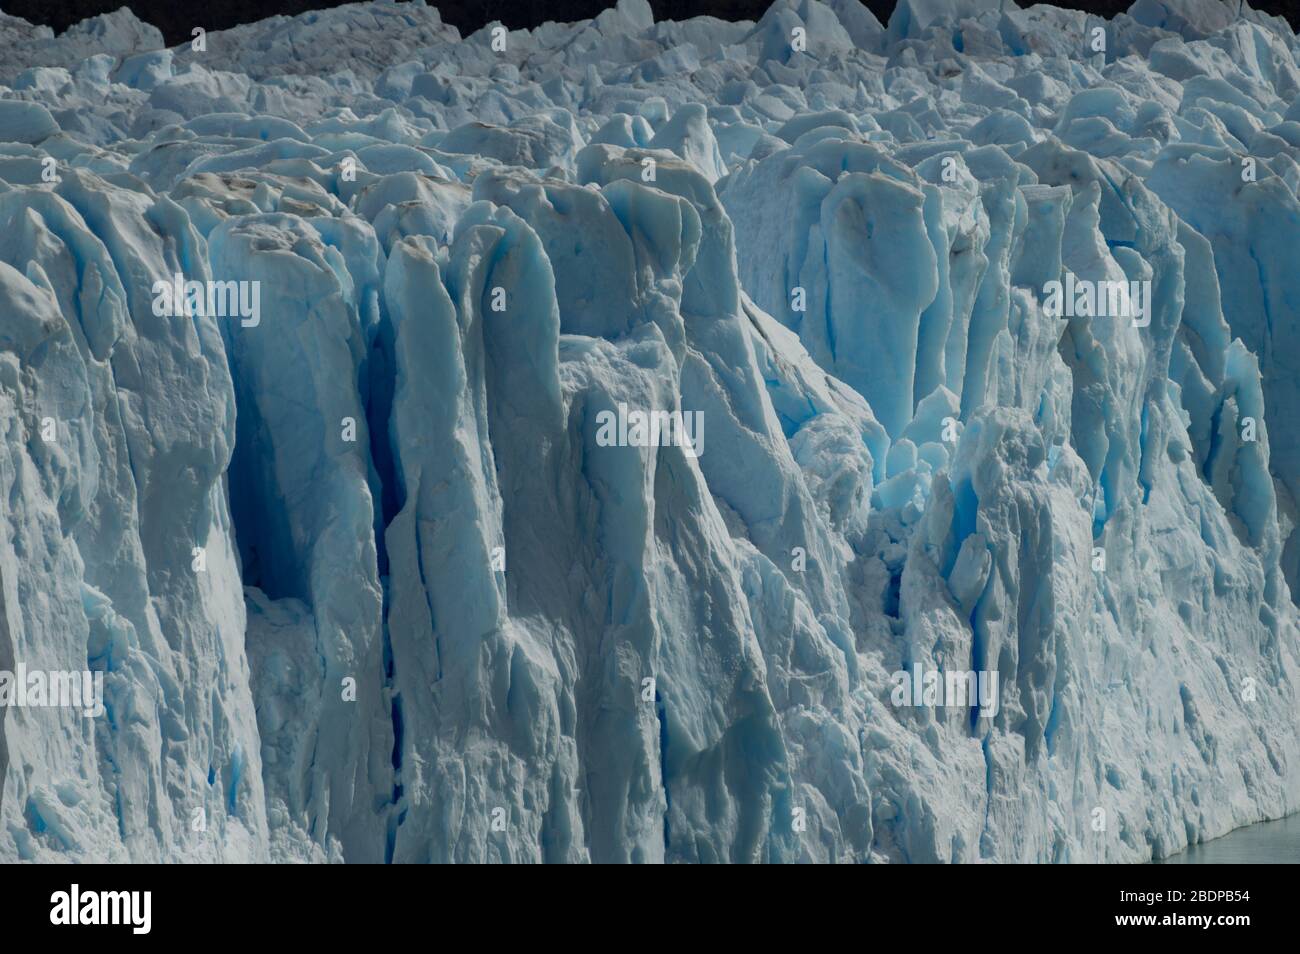 Calafate Glaciar Perito Moreno Argentina Stock Photo Alamy